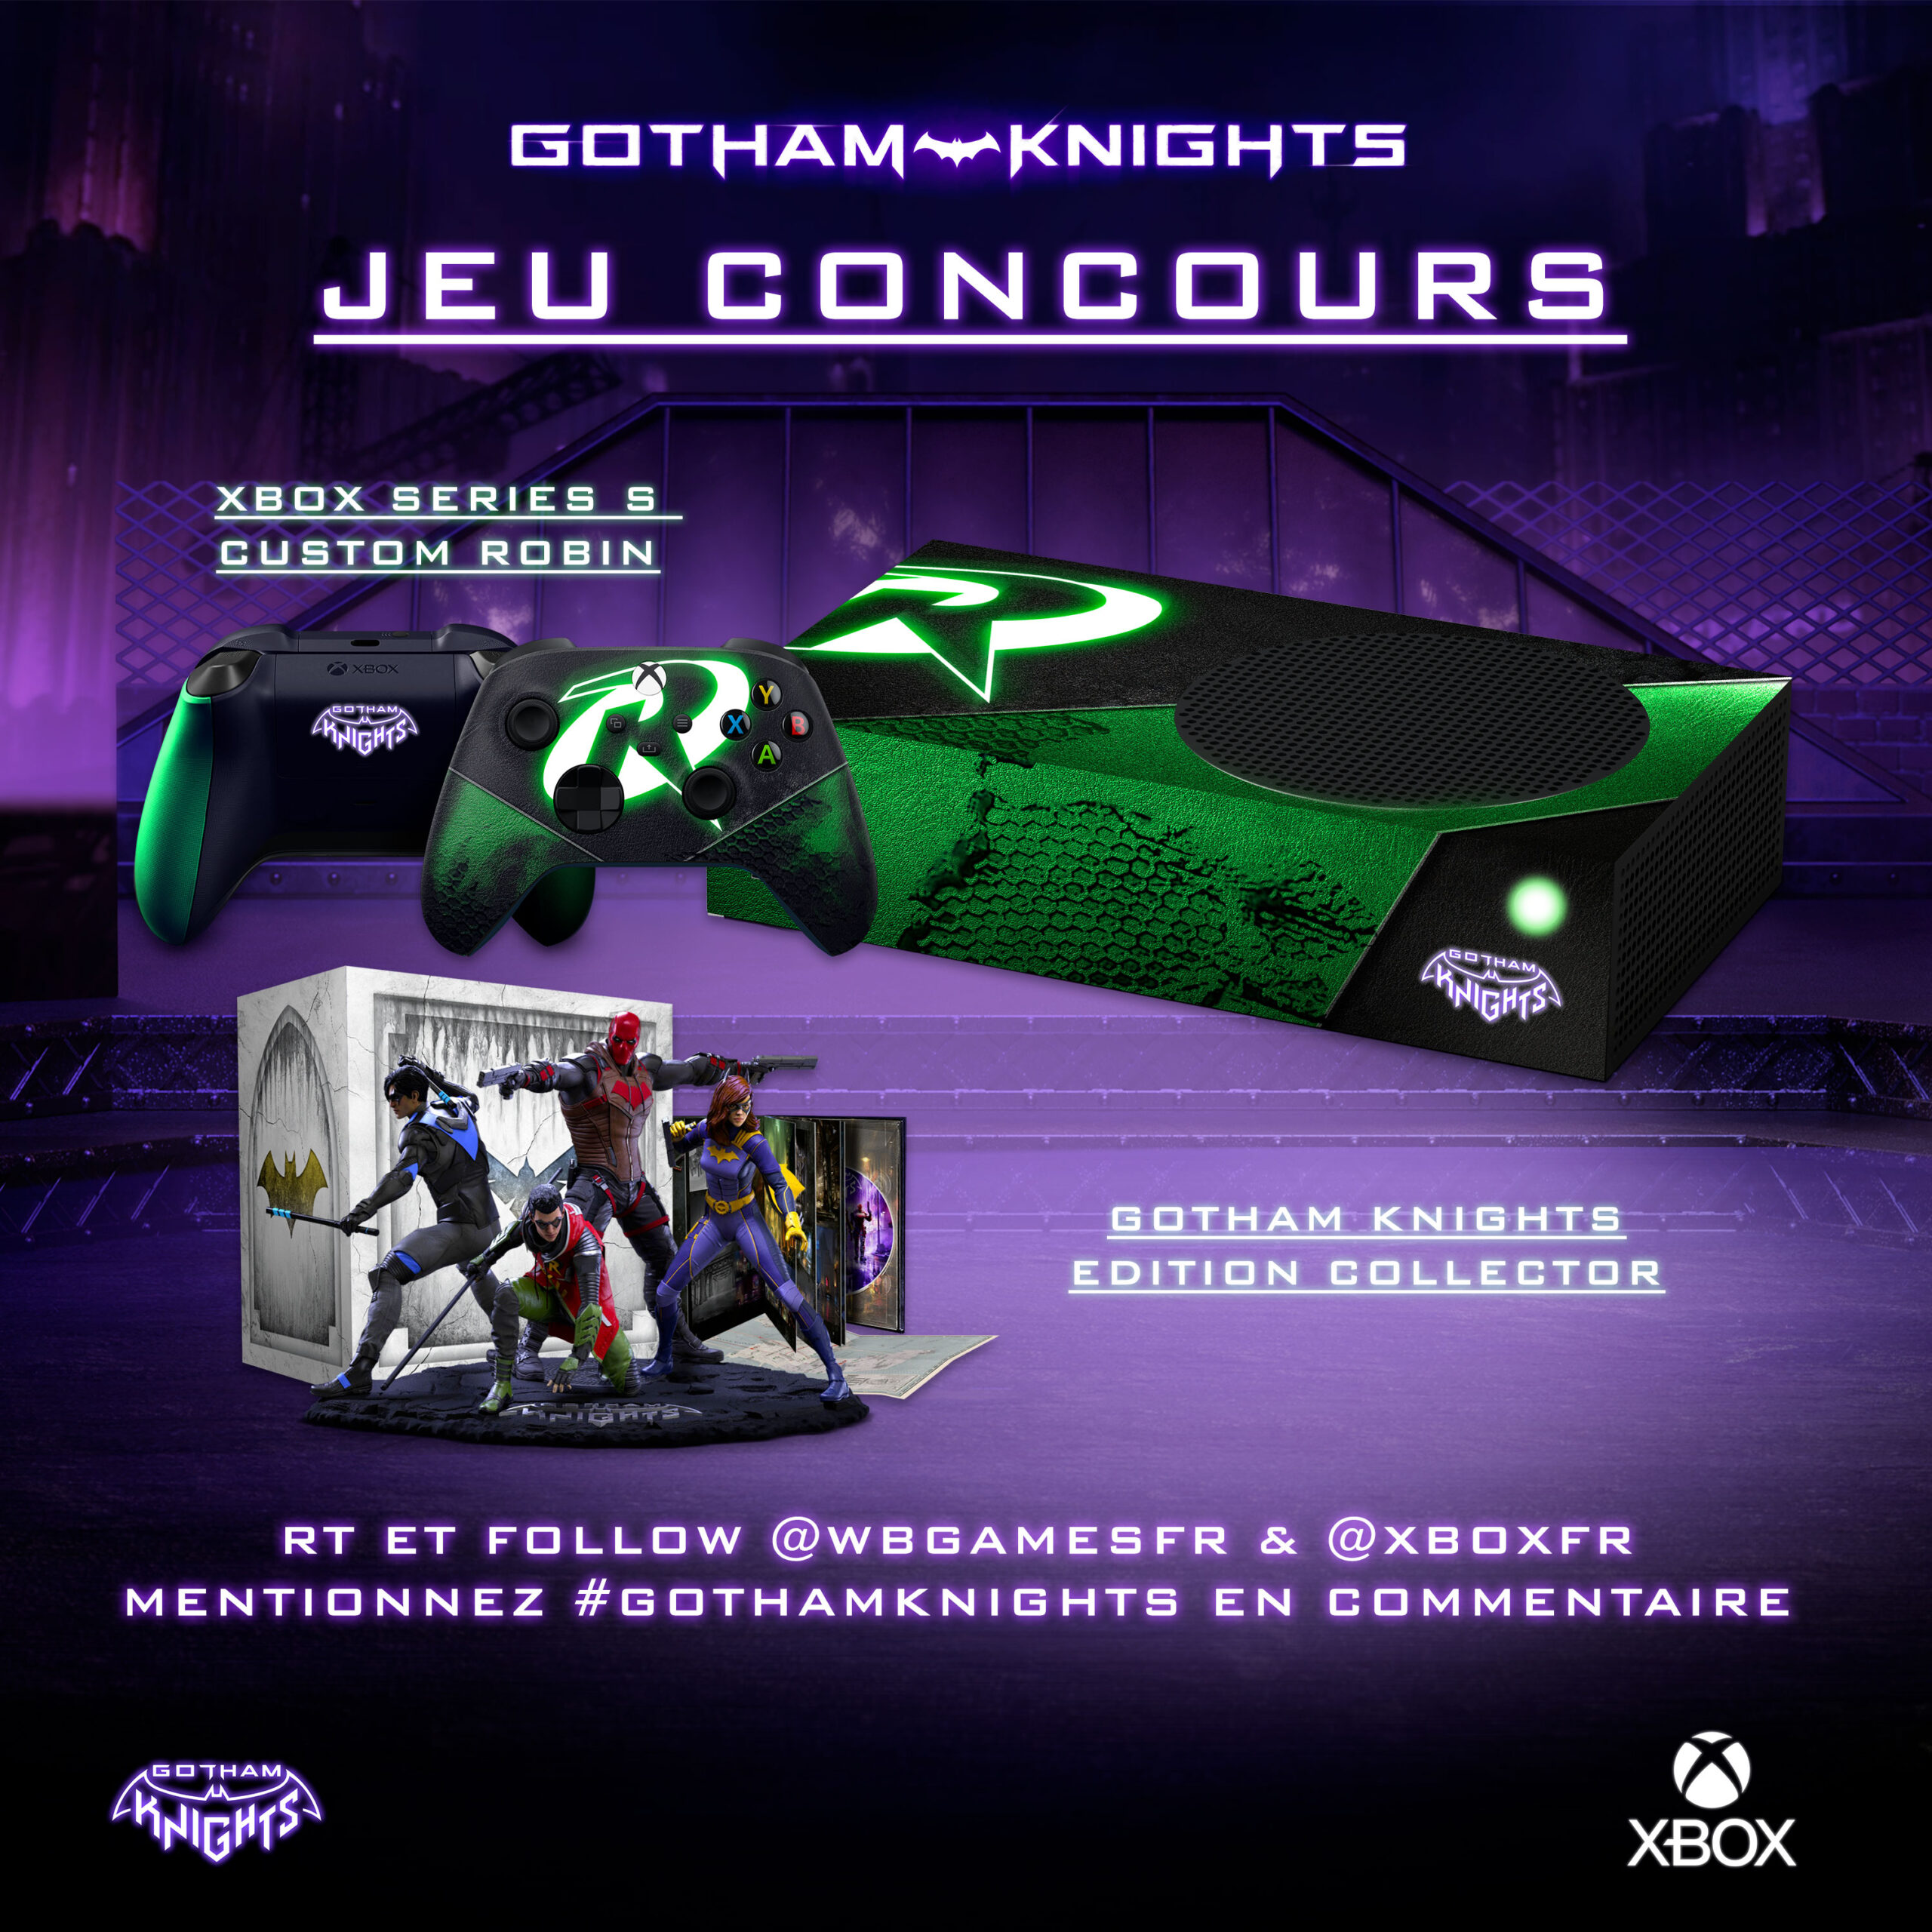 Представили еще 2 уникальные Xbox Series S - в стиле Робина и Красного Колпака из Gotham Knights